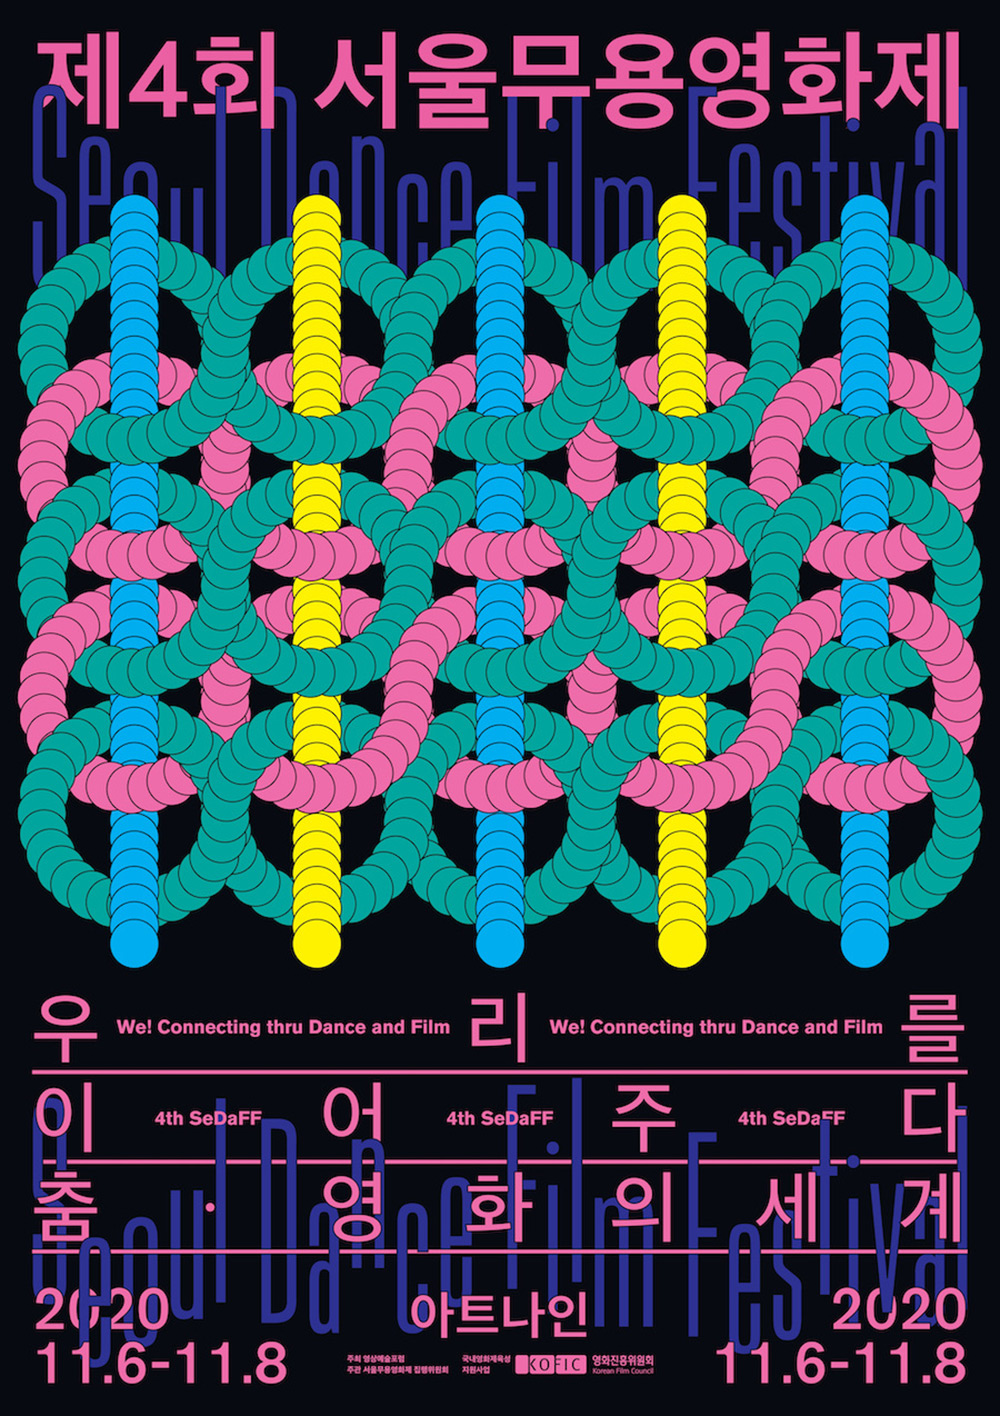 韩国工作室STUDIO ODD HYPHEN的创意海报作品